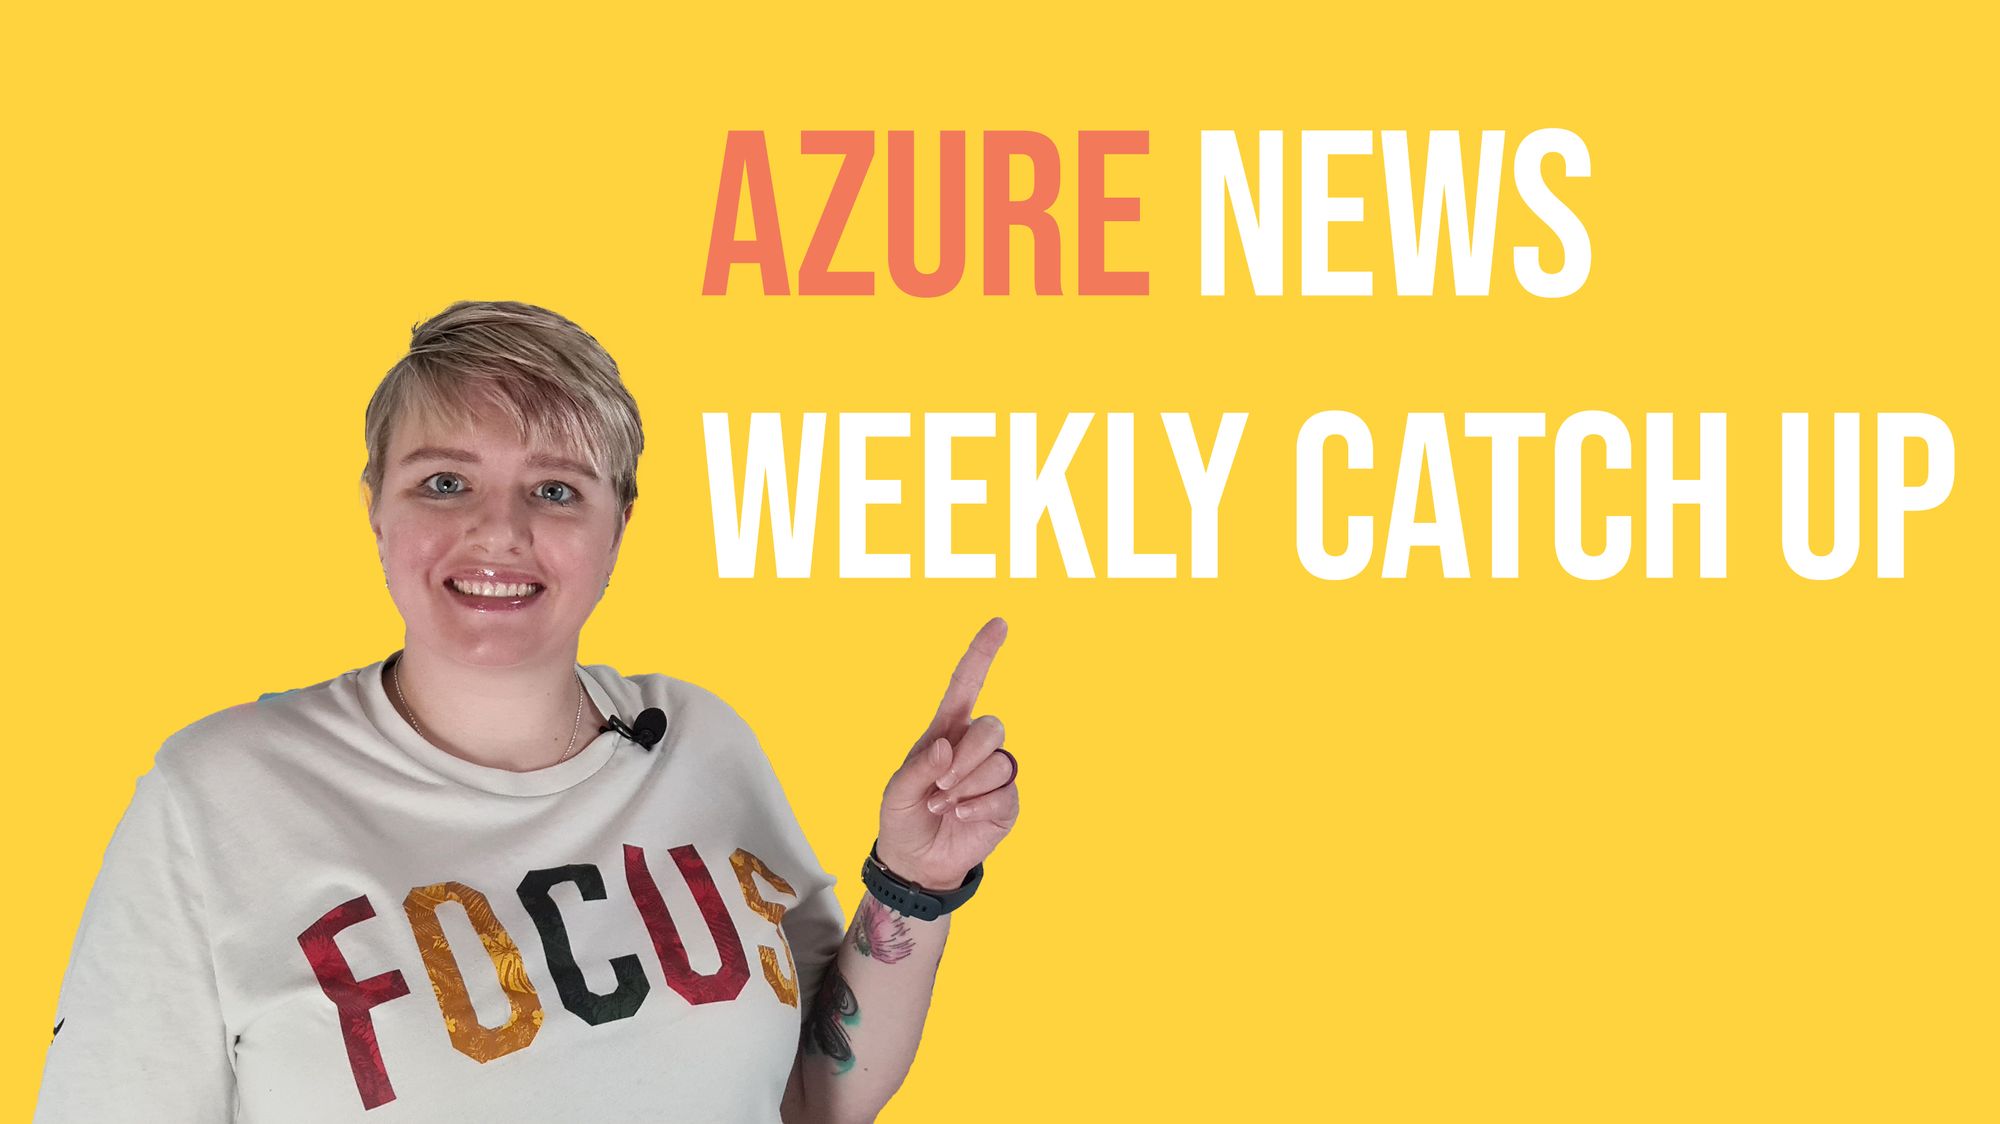 Weekly Update #94 - Azure news roundup